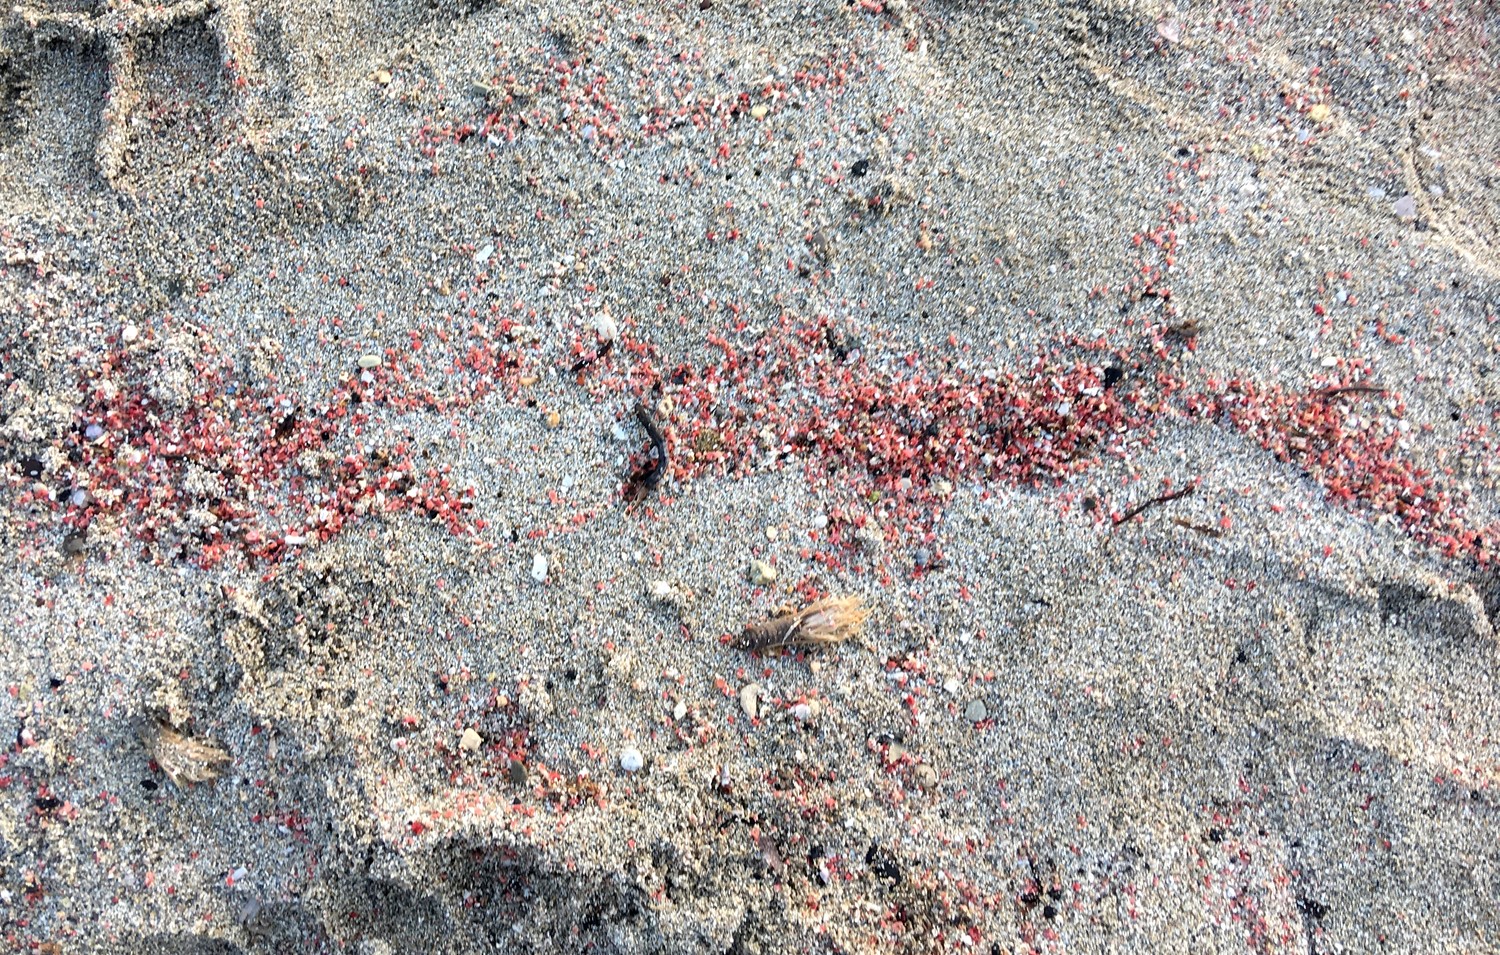 Красны камушки разм 1,-2 мм придаюют морской воде у берега красноватый цвет воды.